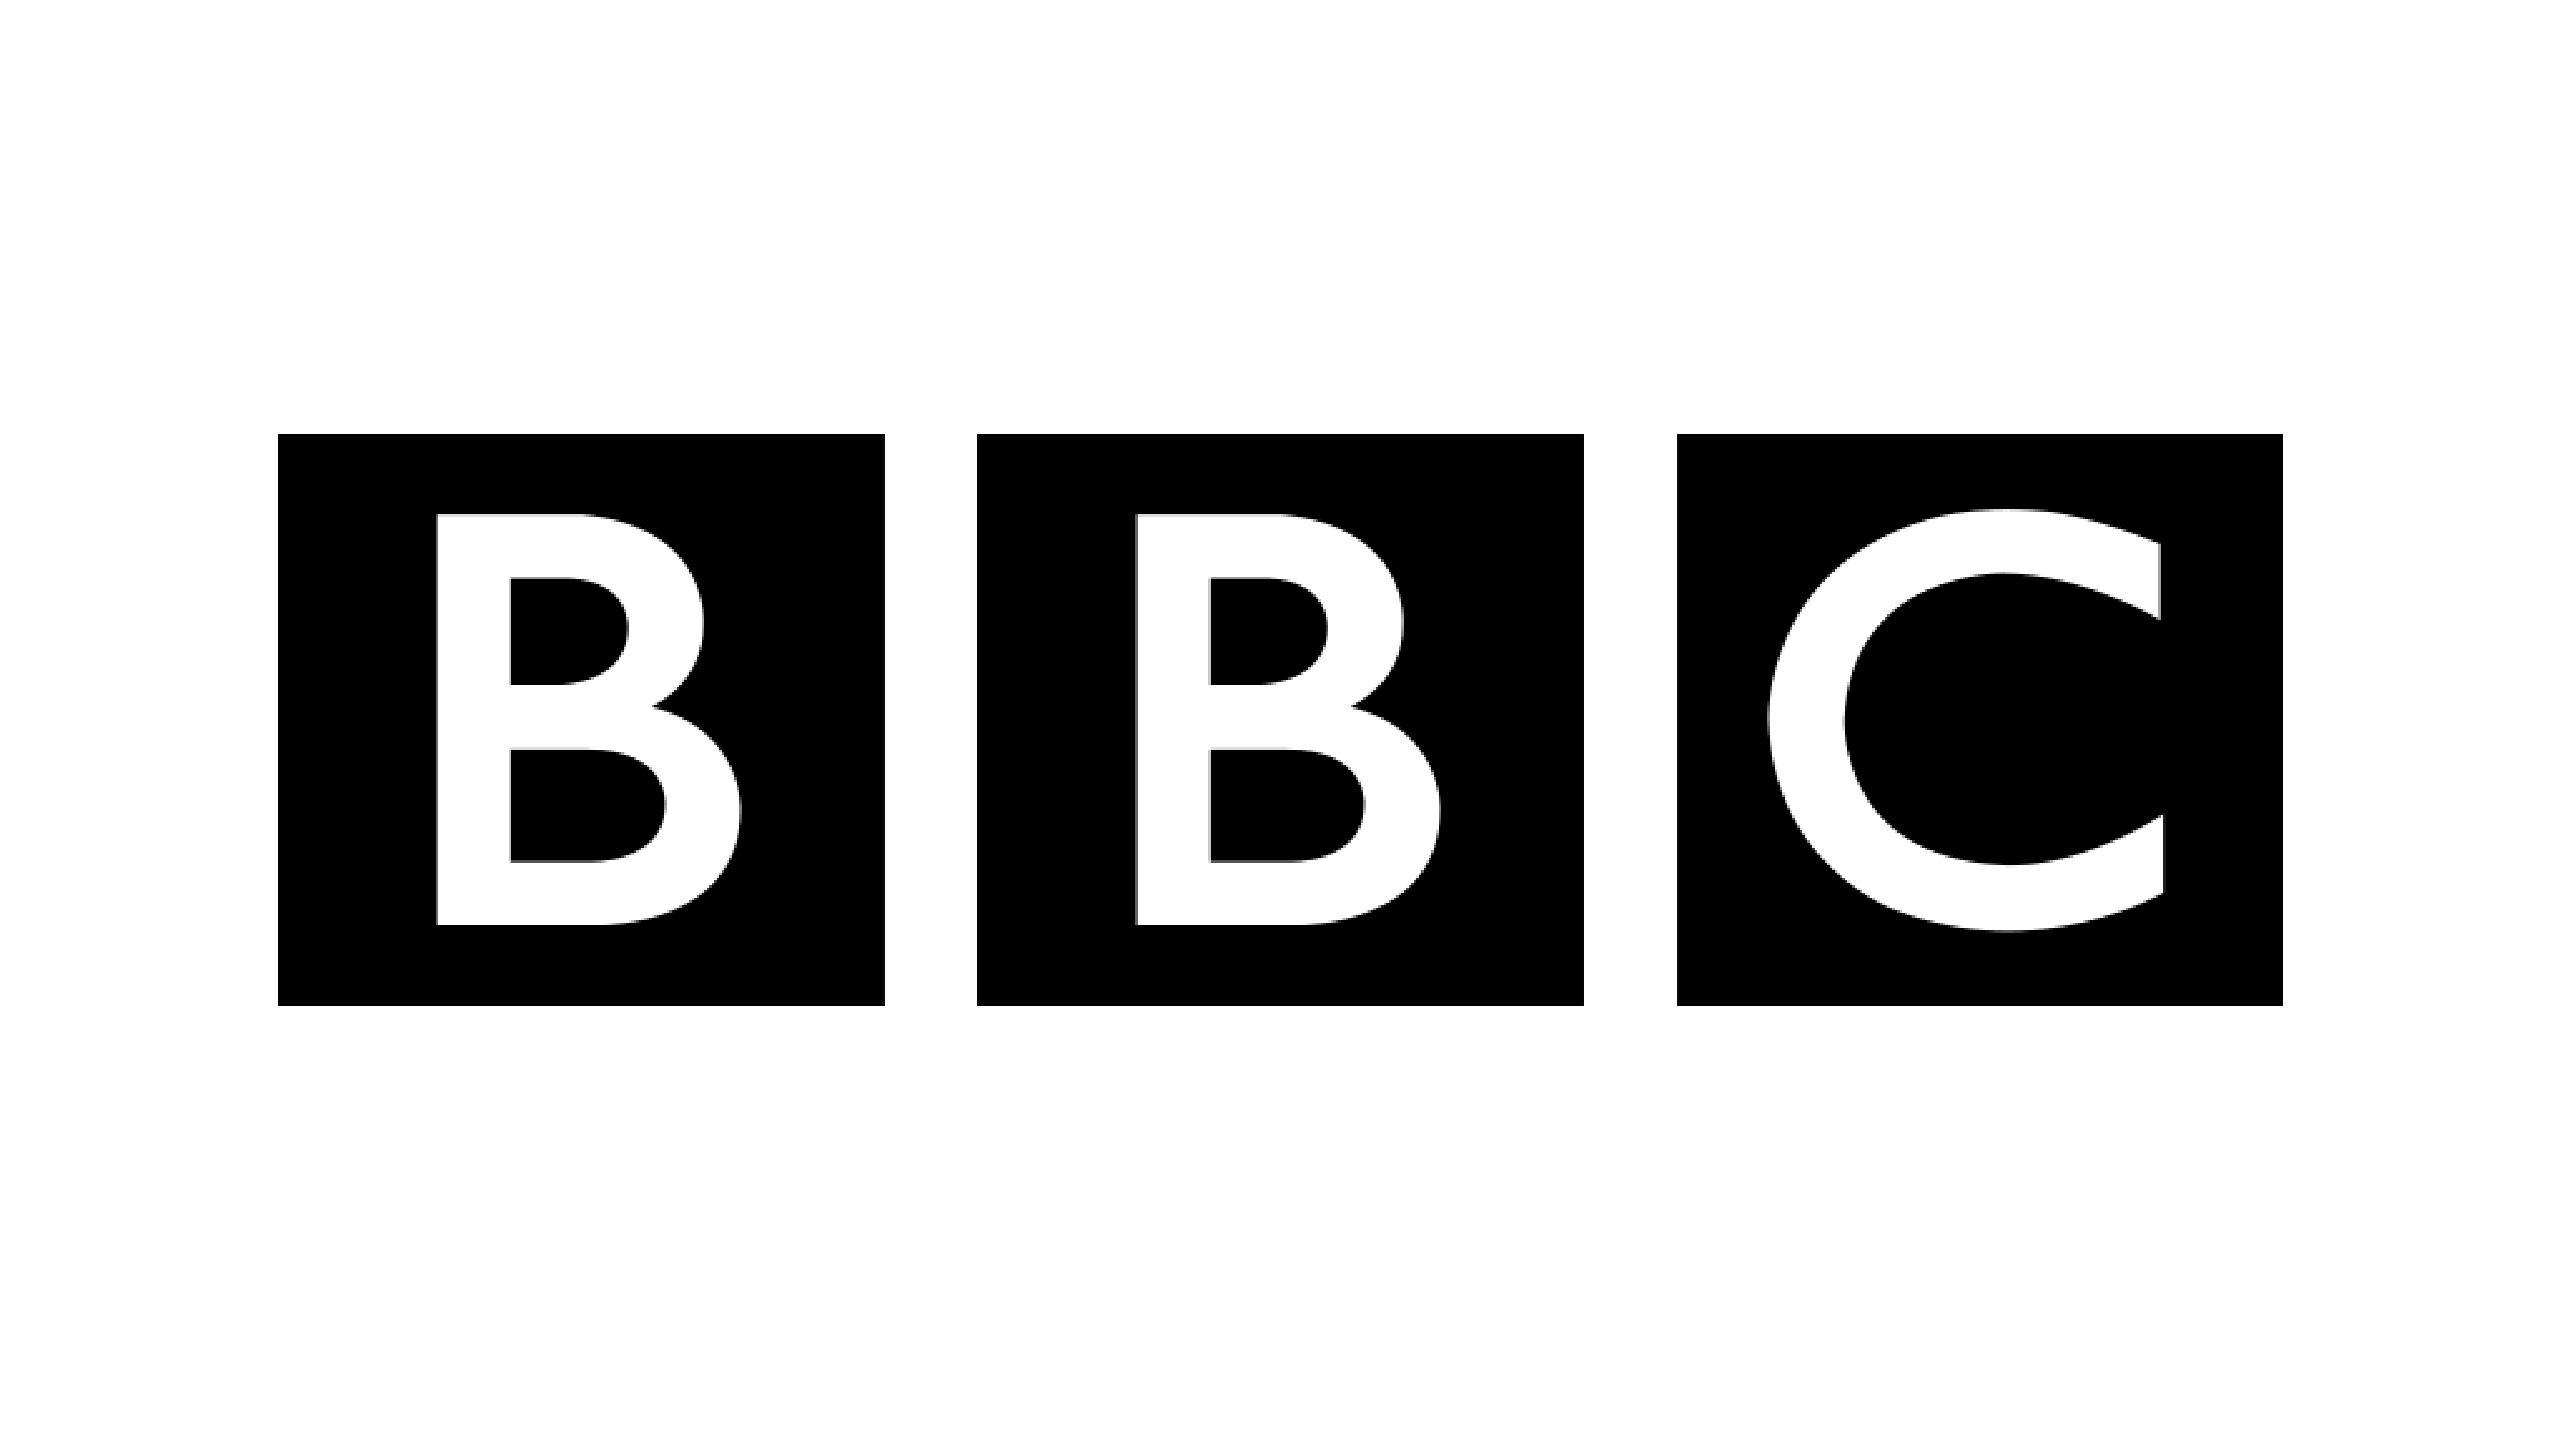 BBC